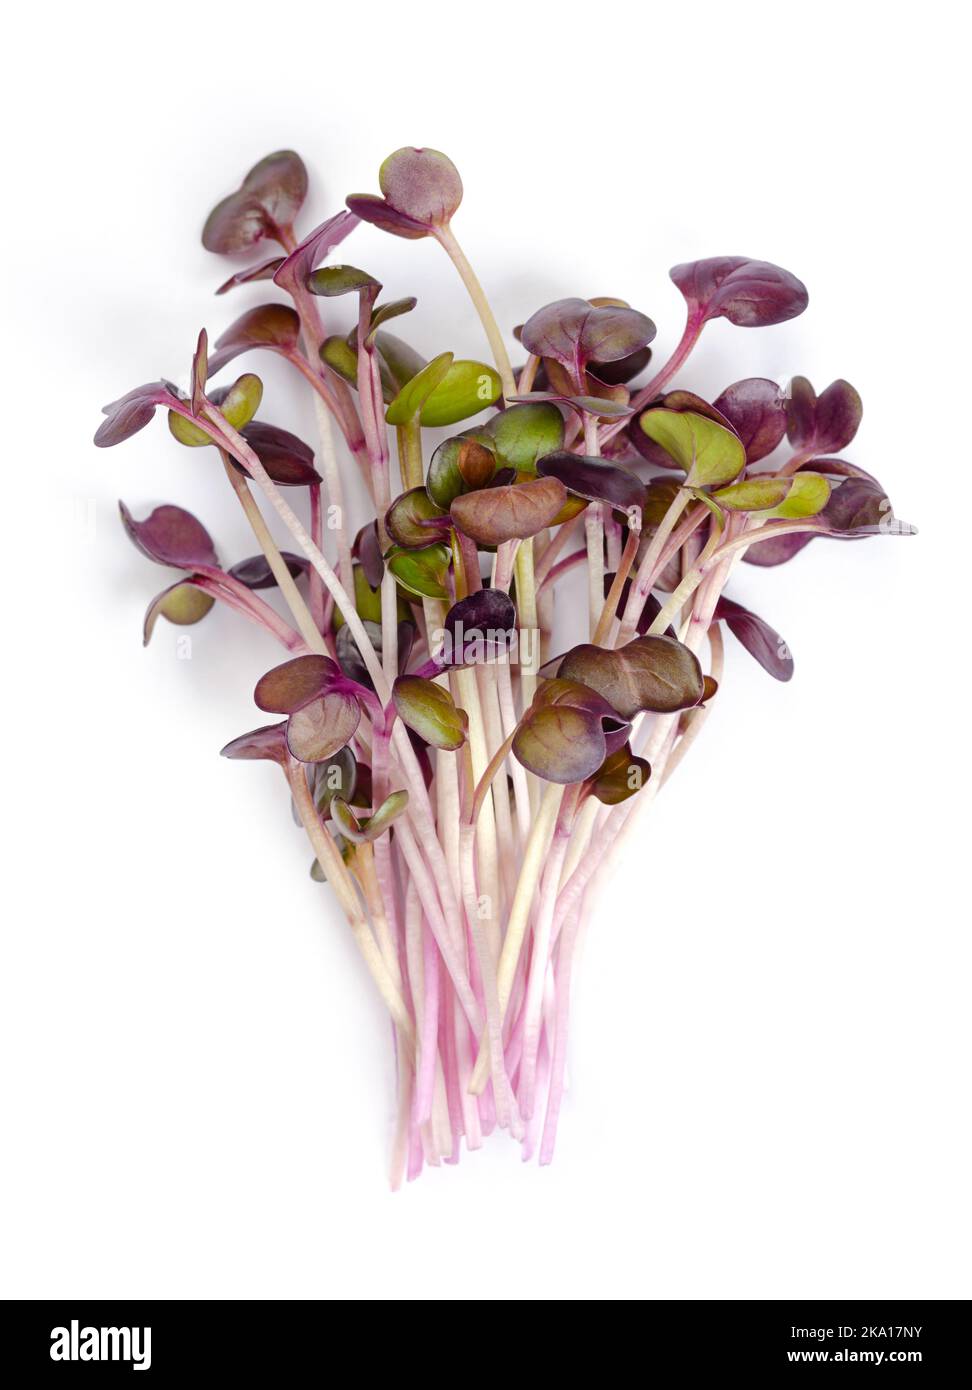 Bouquet de microverts de radis rouges. Plantules, pousses et jeunes plantes prêtes à manger de la variété Raphanus sativus, un légume de racine comestible. Banque D'Images